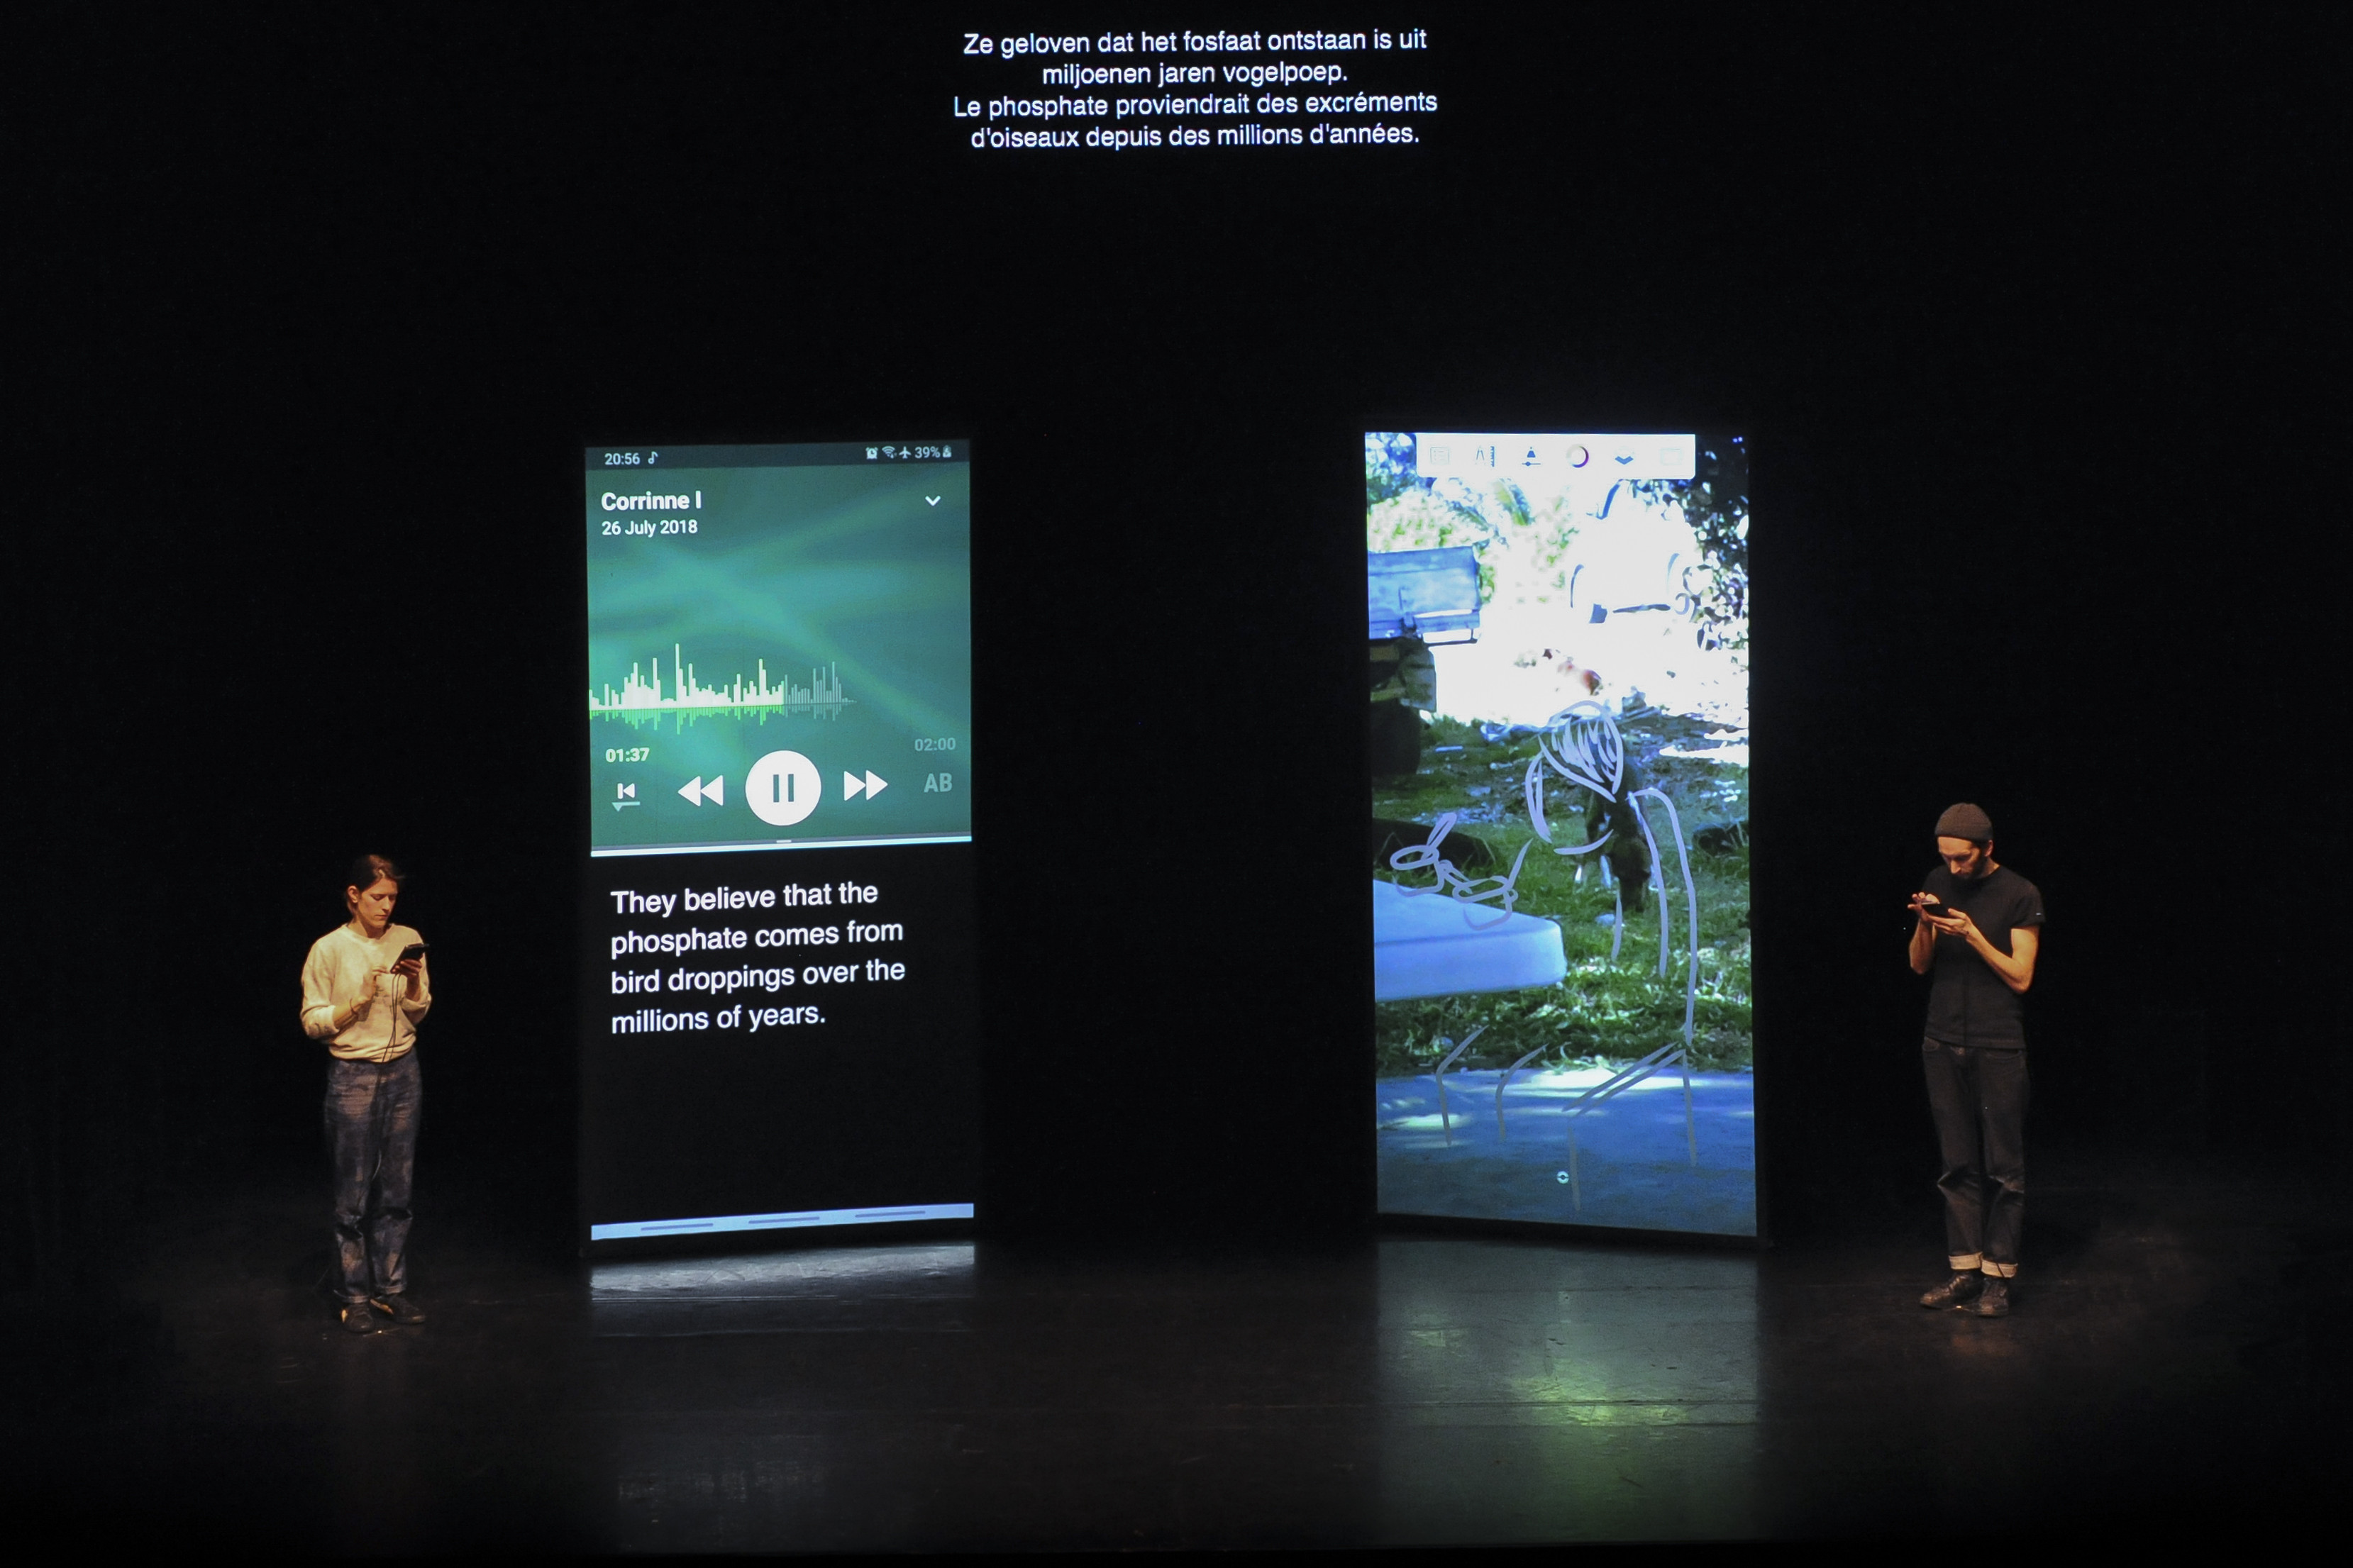 Die beiden Künstler*innen stehen neben grossen Screens, die die Smartphones in den Händen der beiden zeigen.